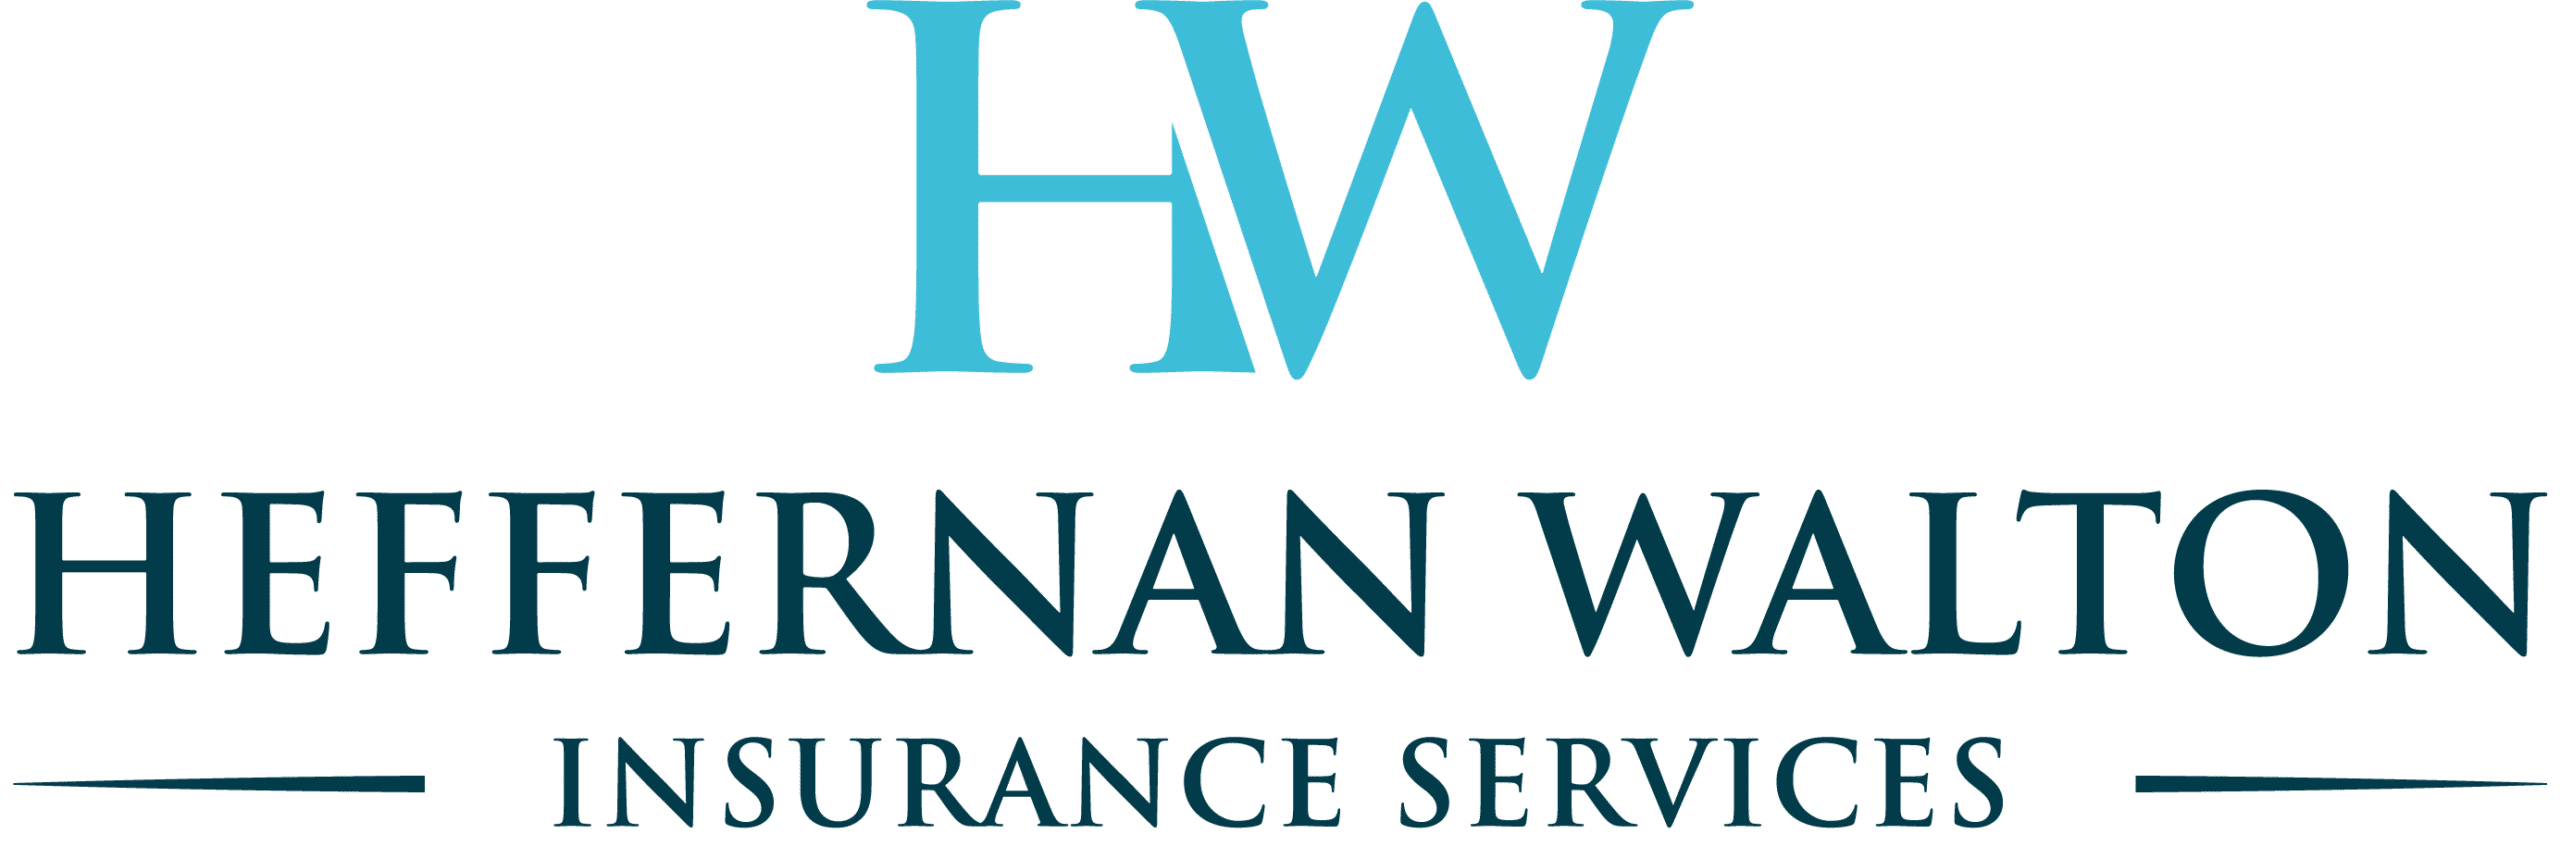 Heffernan Walton Insurance